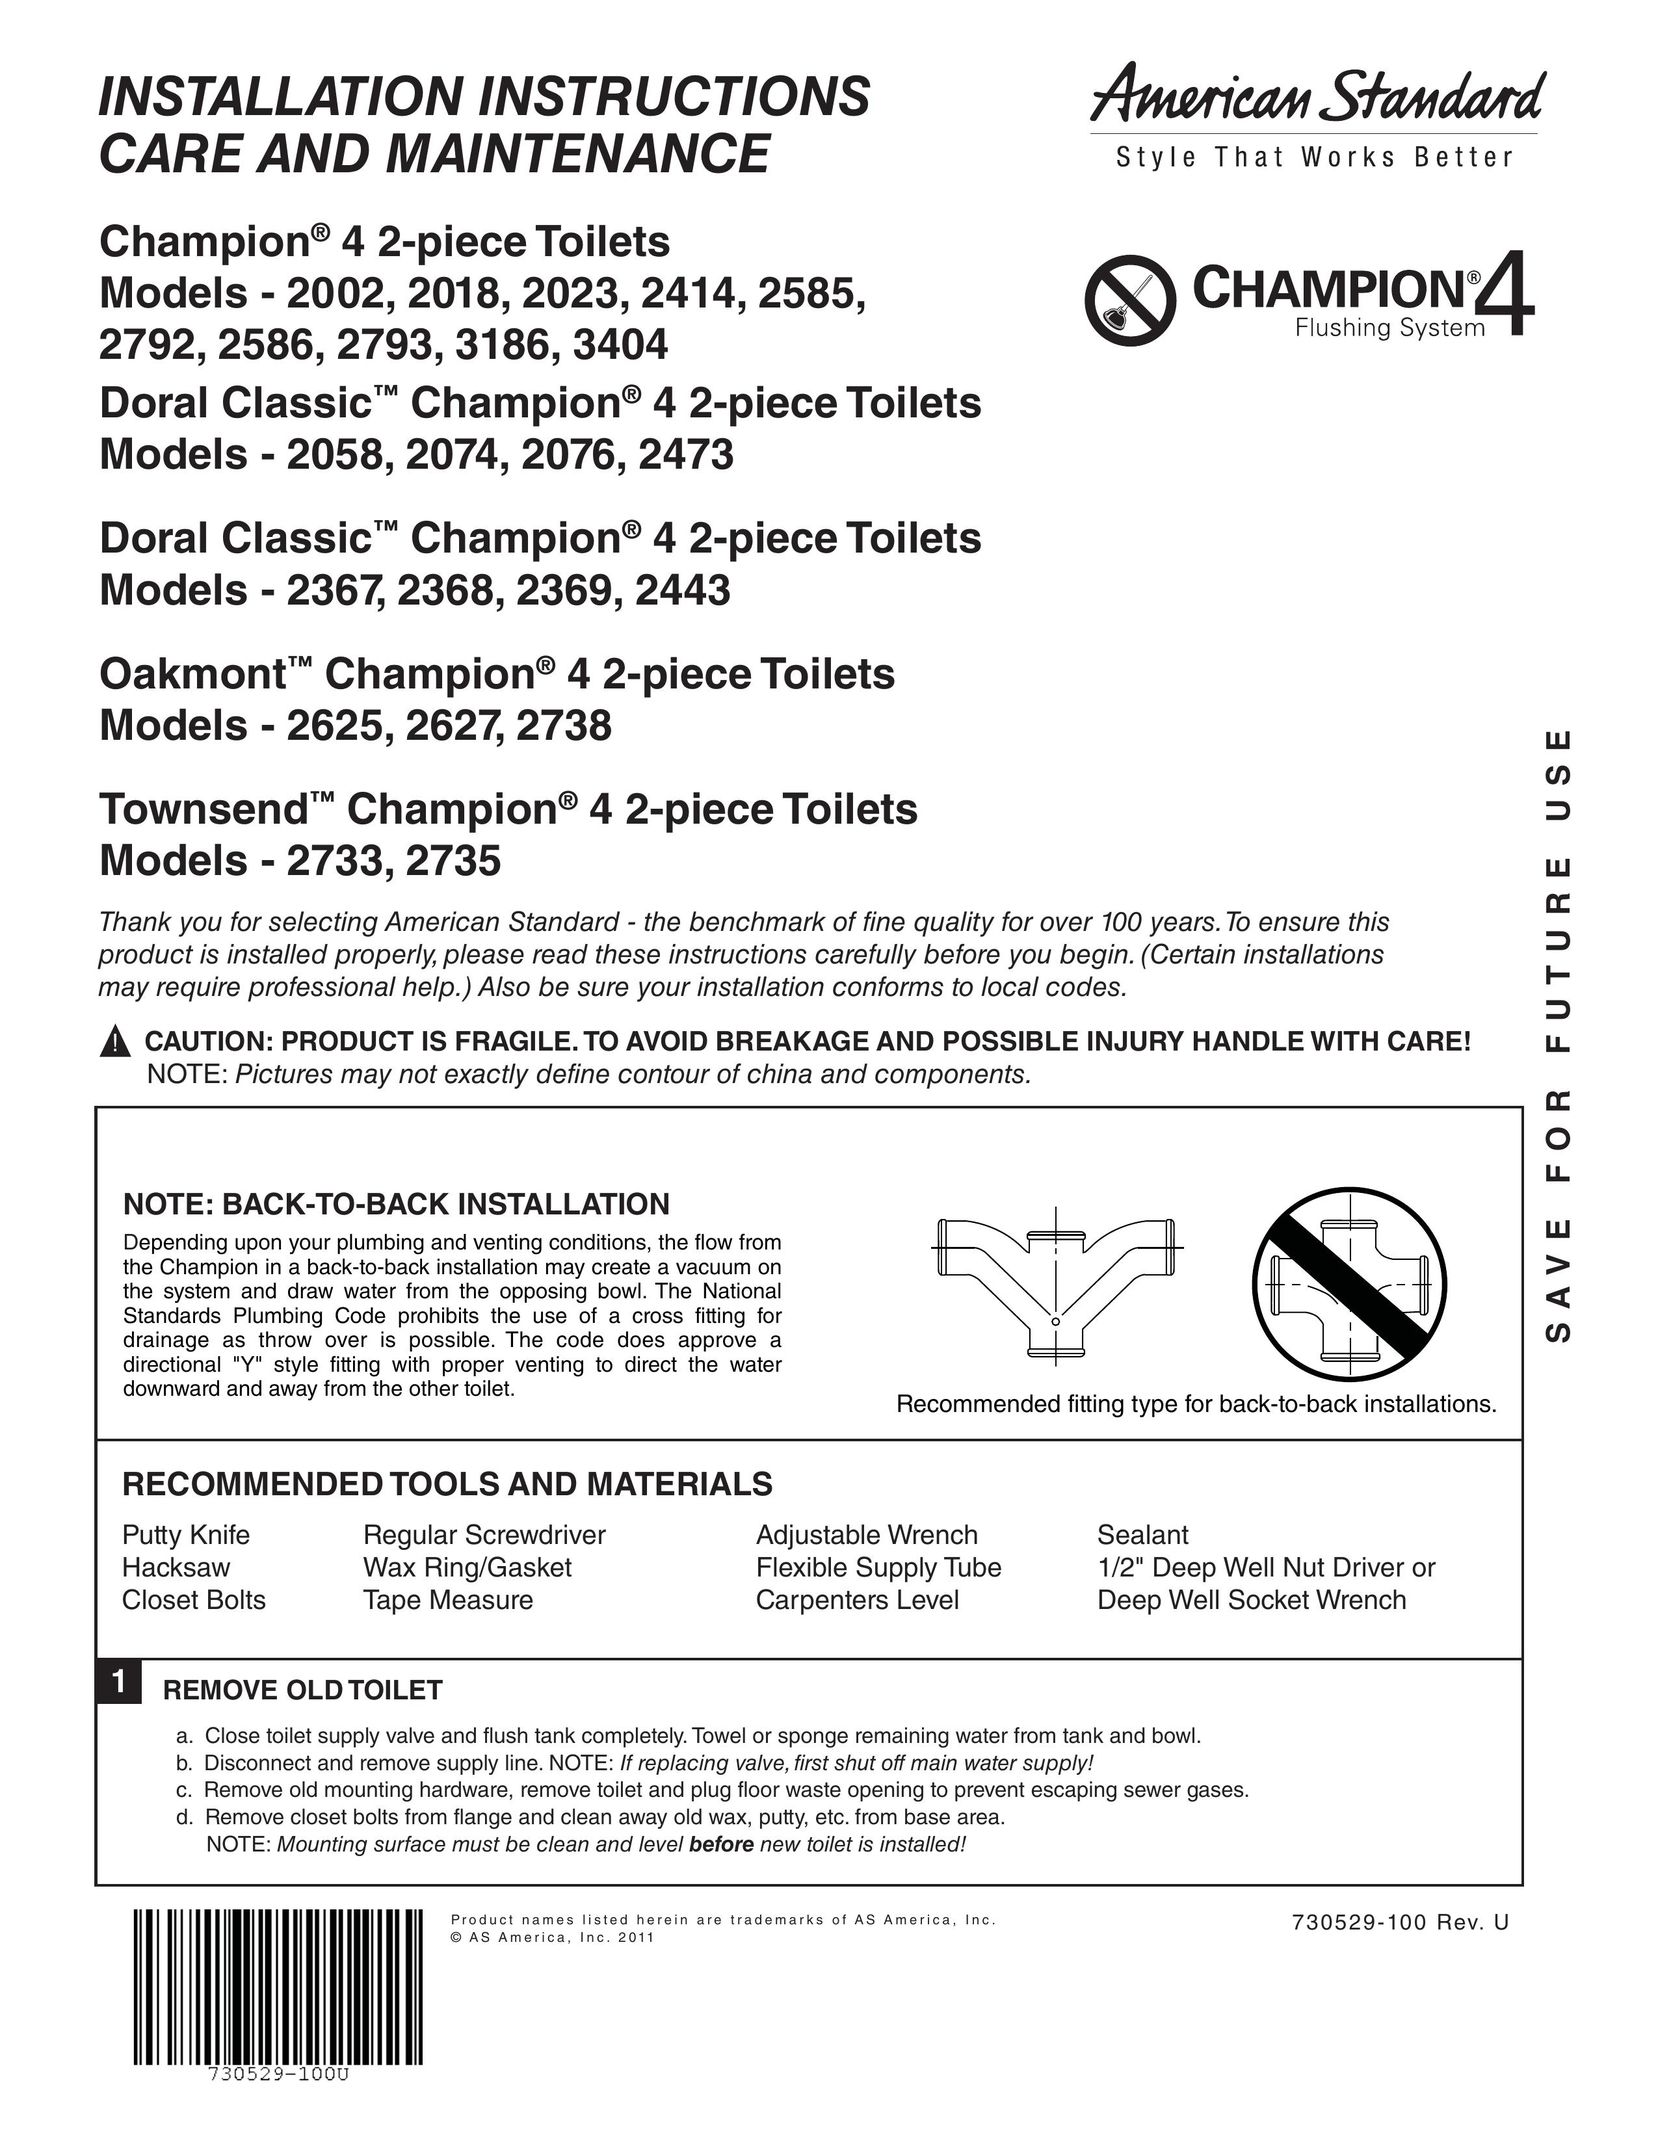 American Standard 2058 Plumbing Product User Manual